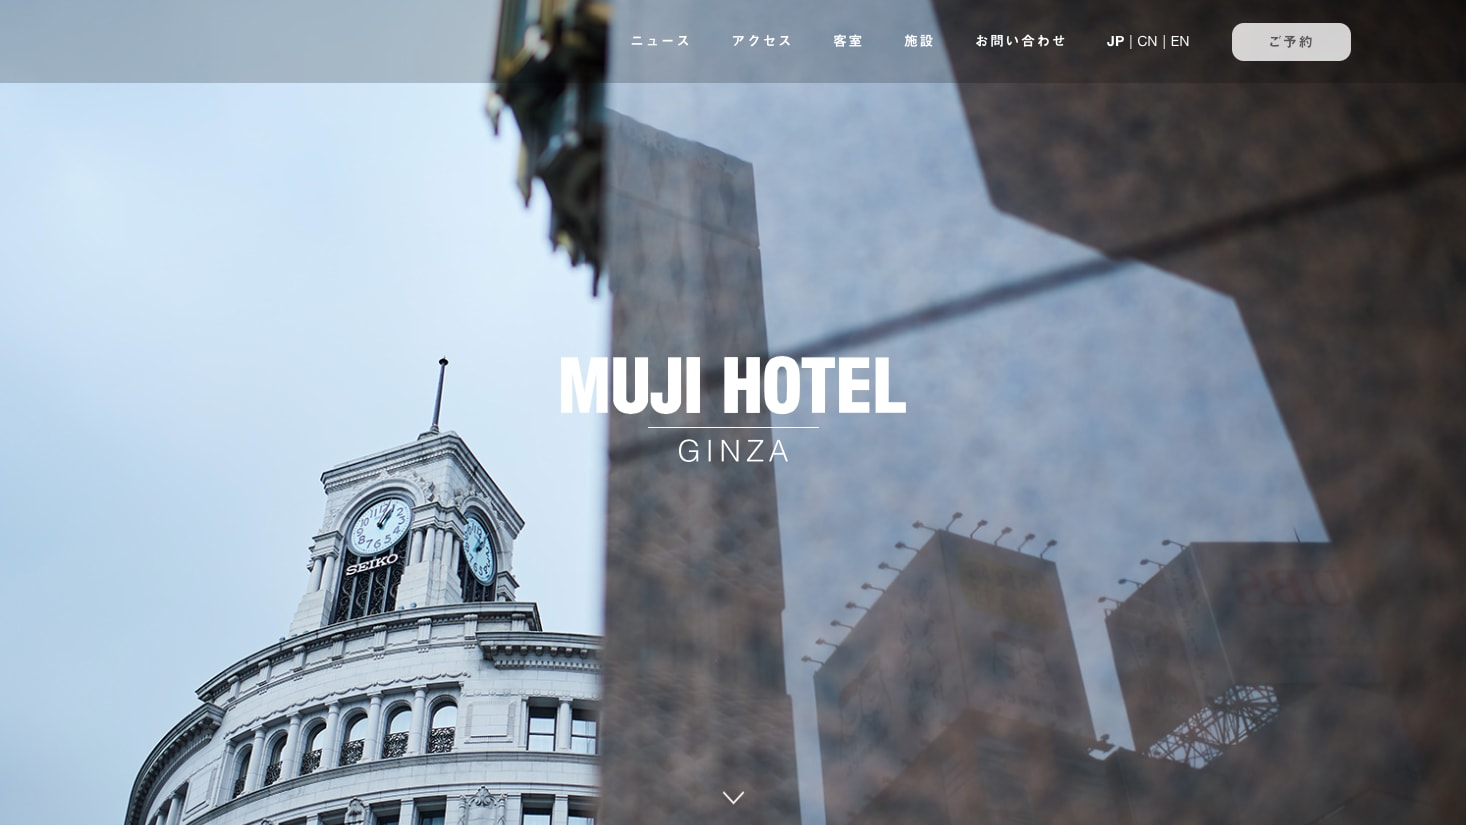 4月4日にMUJI HOTELが開業、3月20日から予約スタート